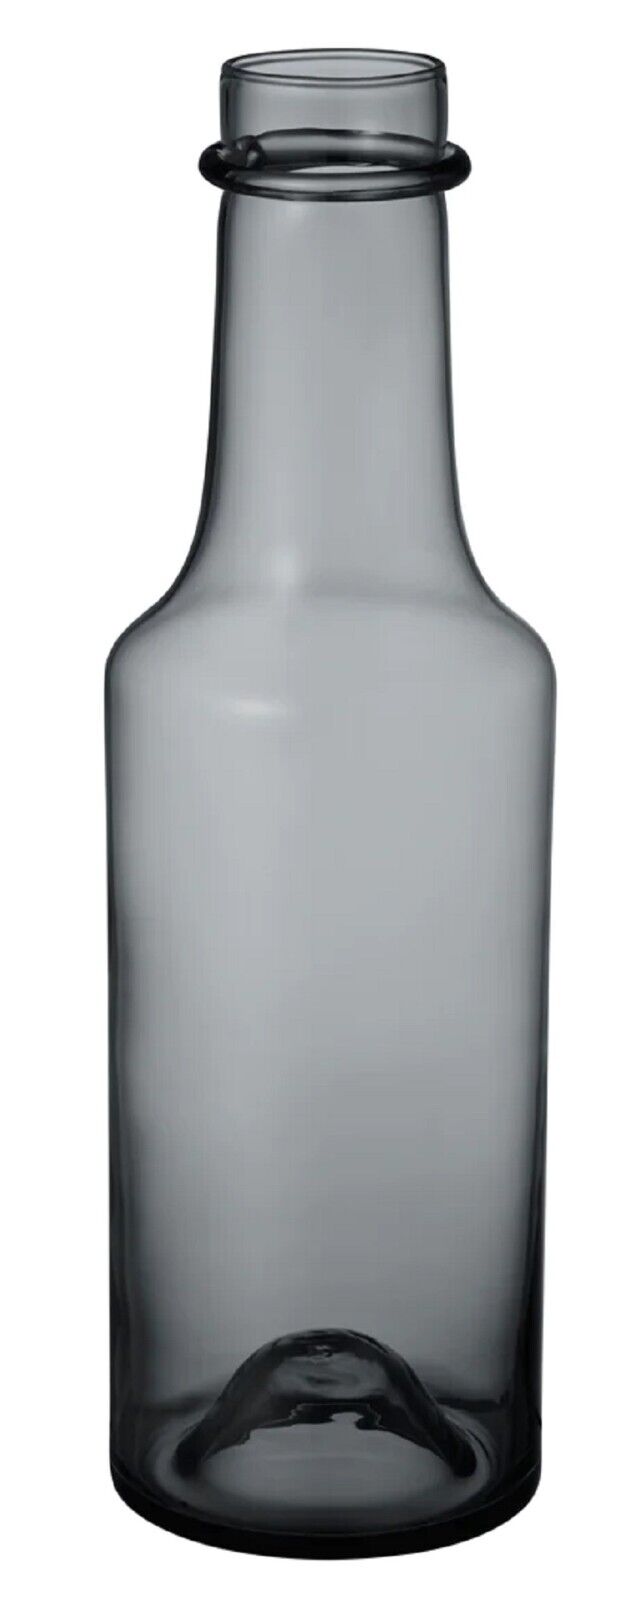 Iittala Tapio Wirkkala Limited Edition Glass Bottle, Grey Iittala Ittala Tapio Wirkkala Limited Edition